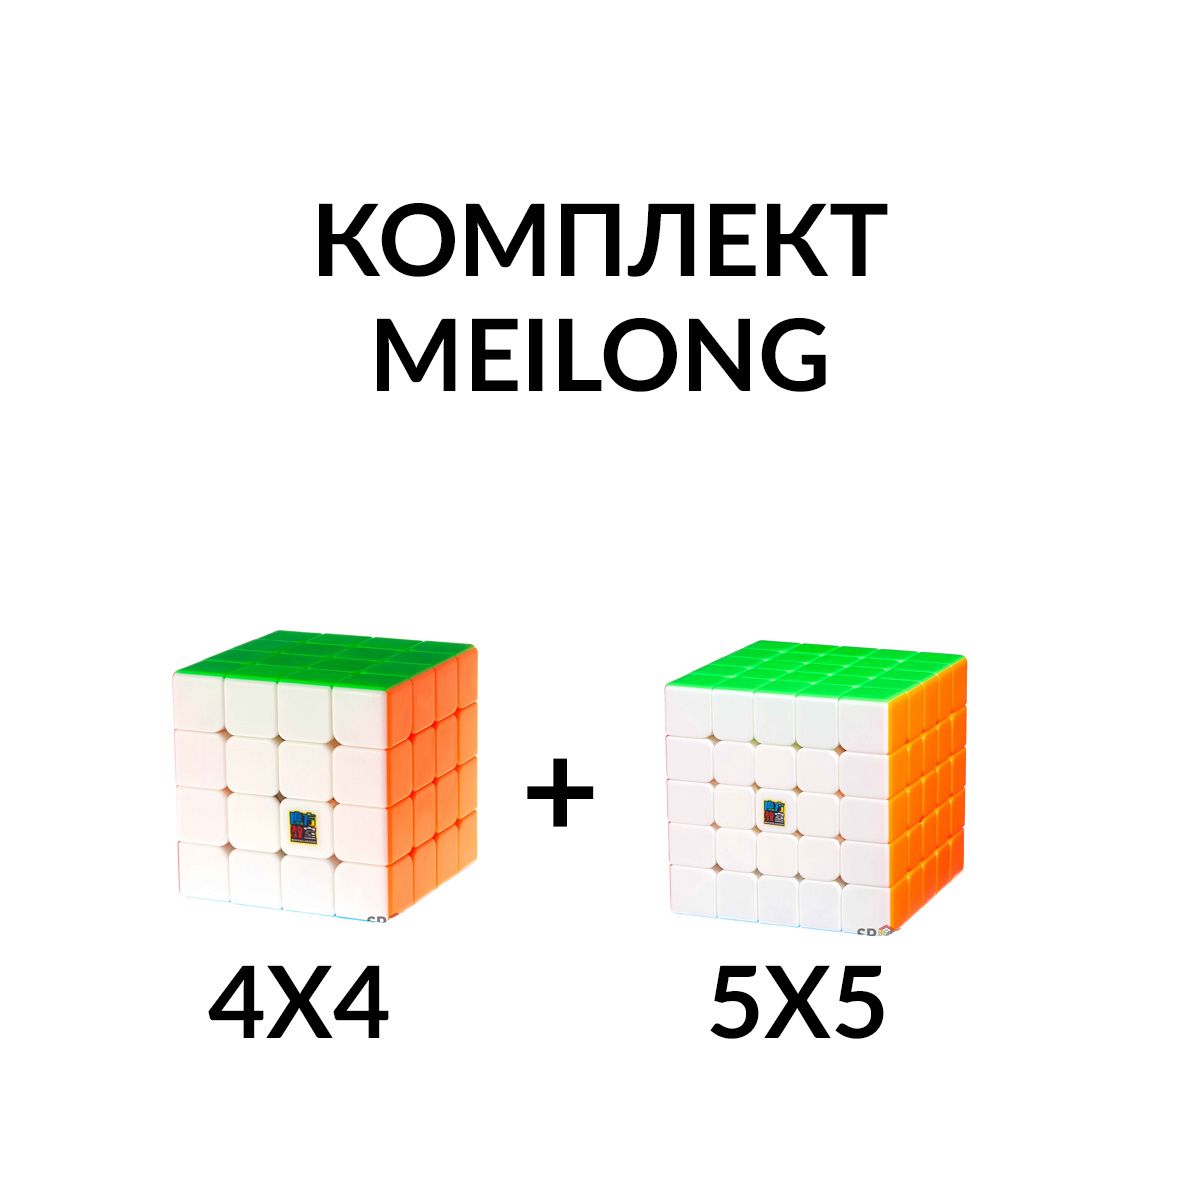 Комплект кубик Рубика MoYu MeiLong бюджетный для начинающих 4х4 и 5х5